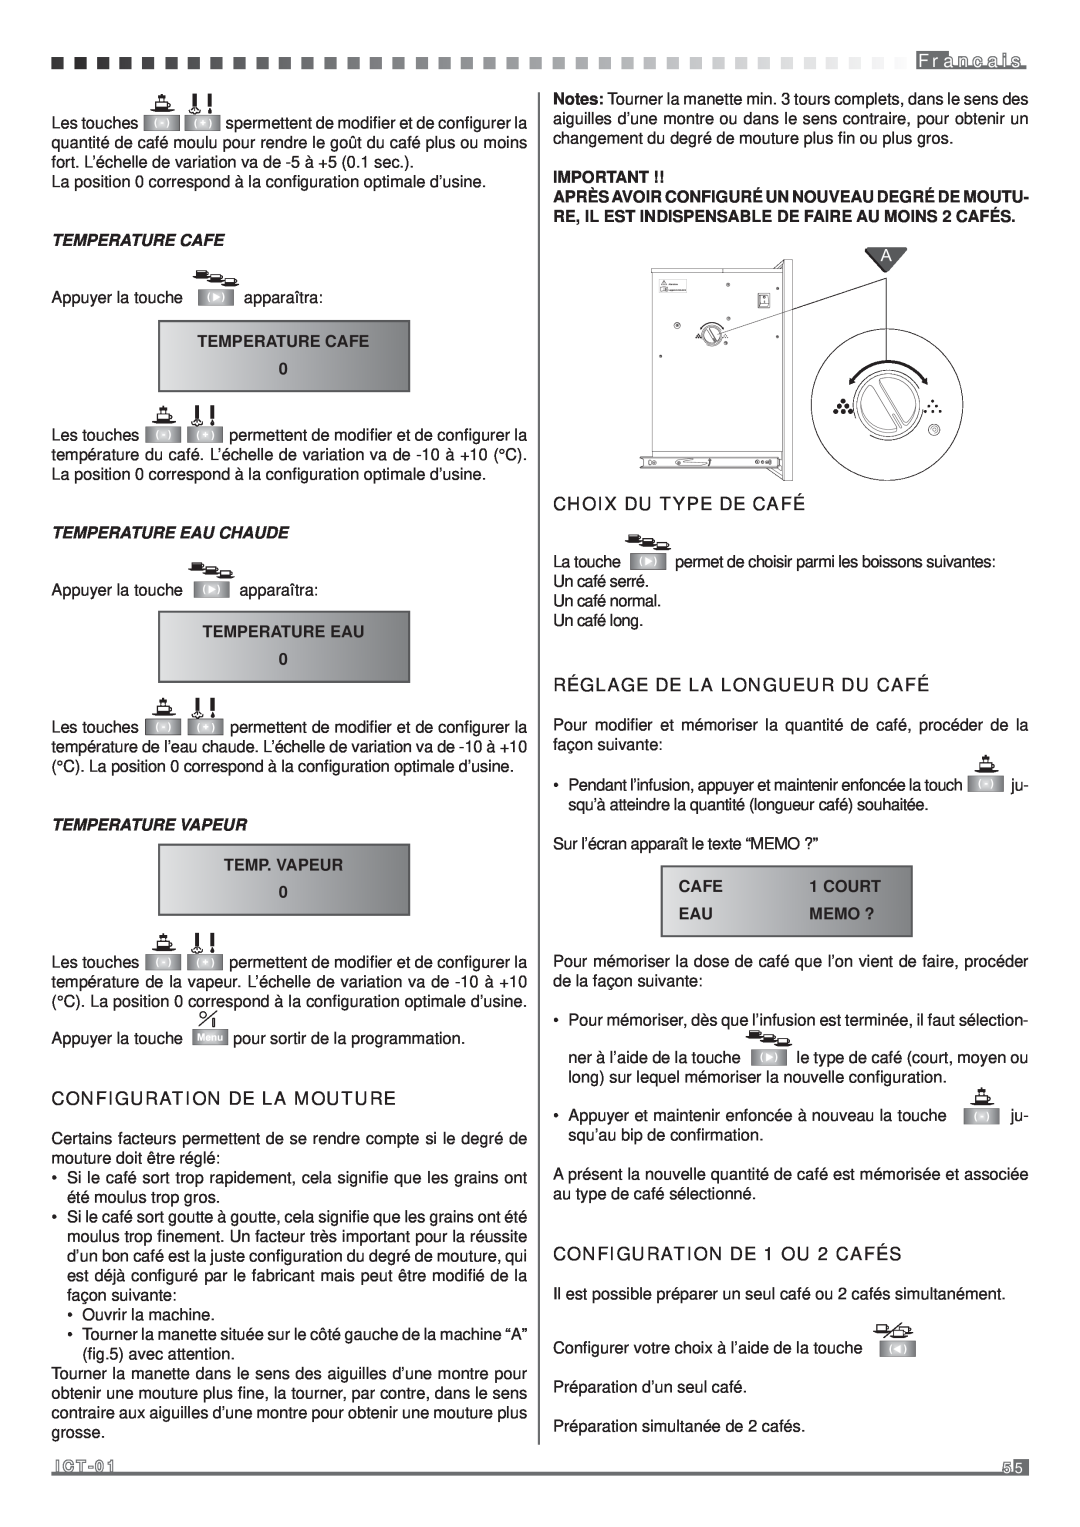 Fagor America MQC-A10 US manual Choix Du Type De Café, Réglage De La Longueur Du Café, Configuration De La Mouture 